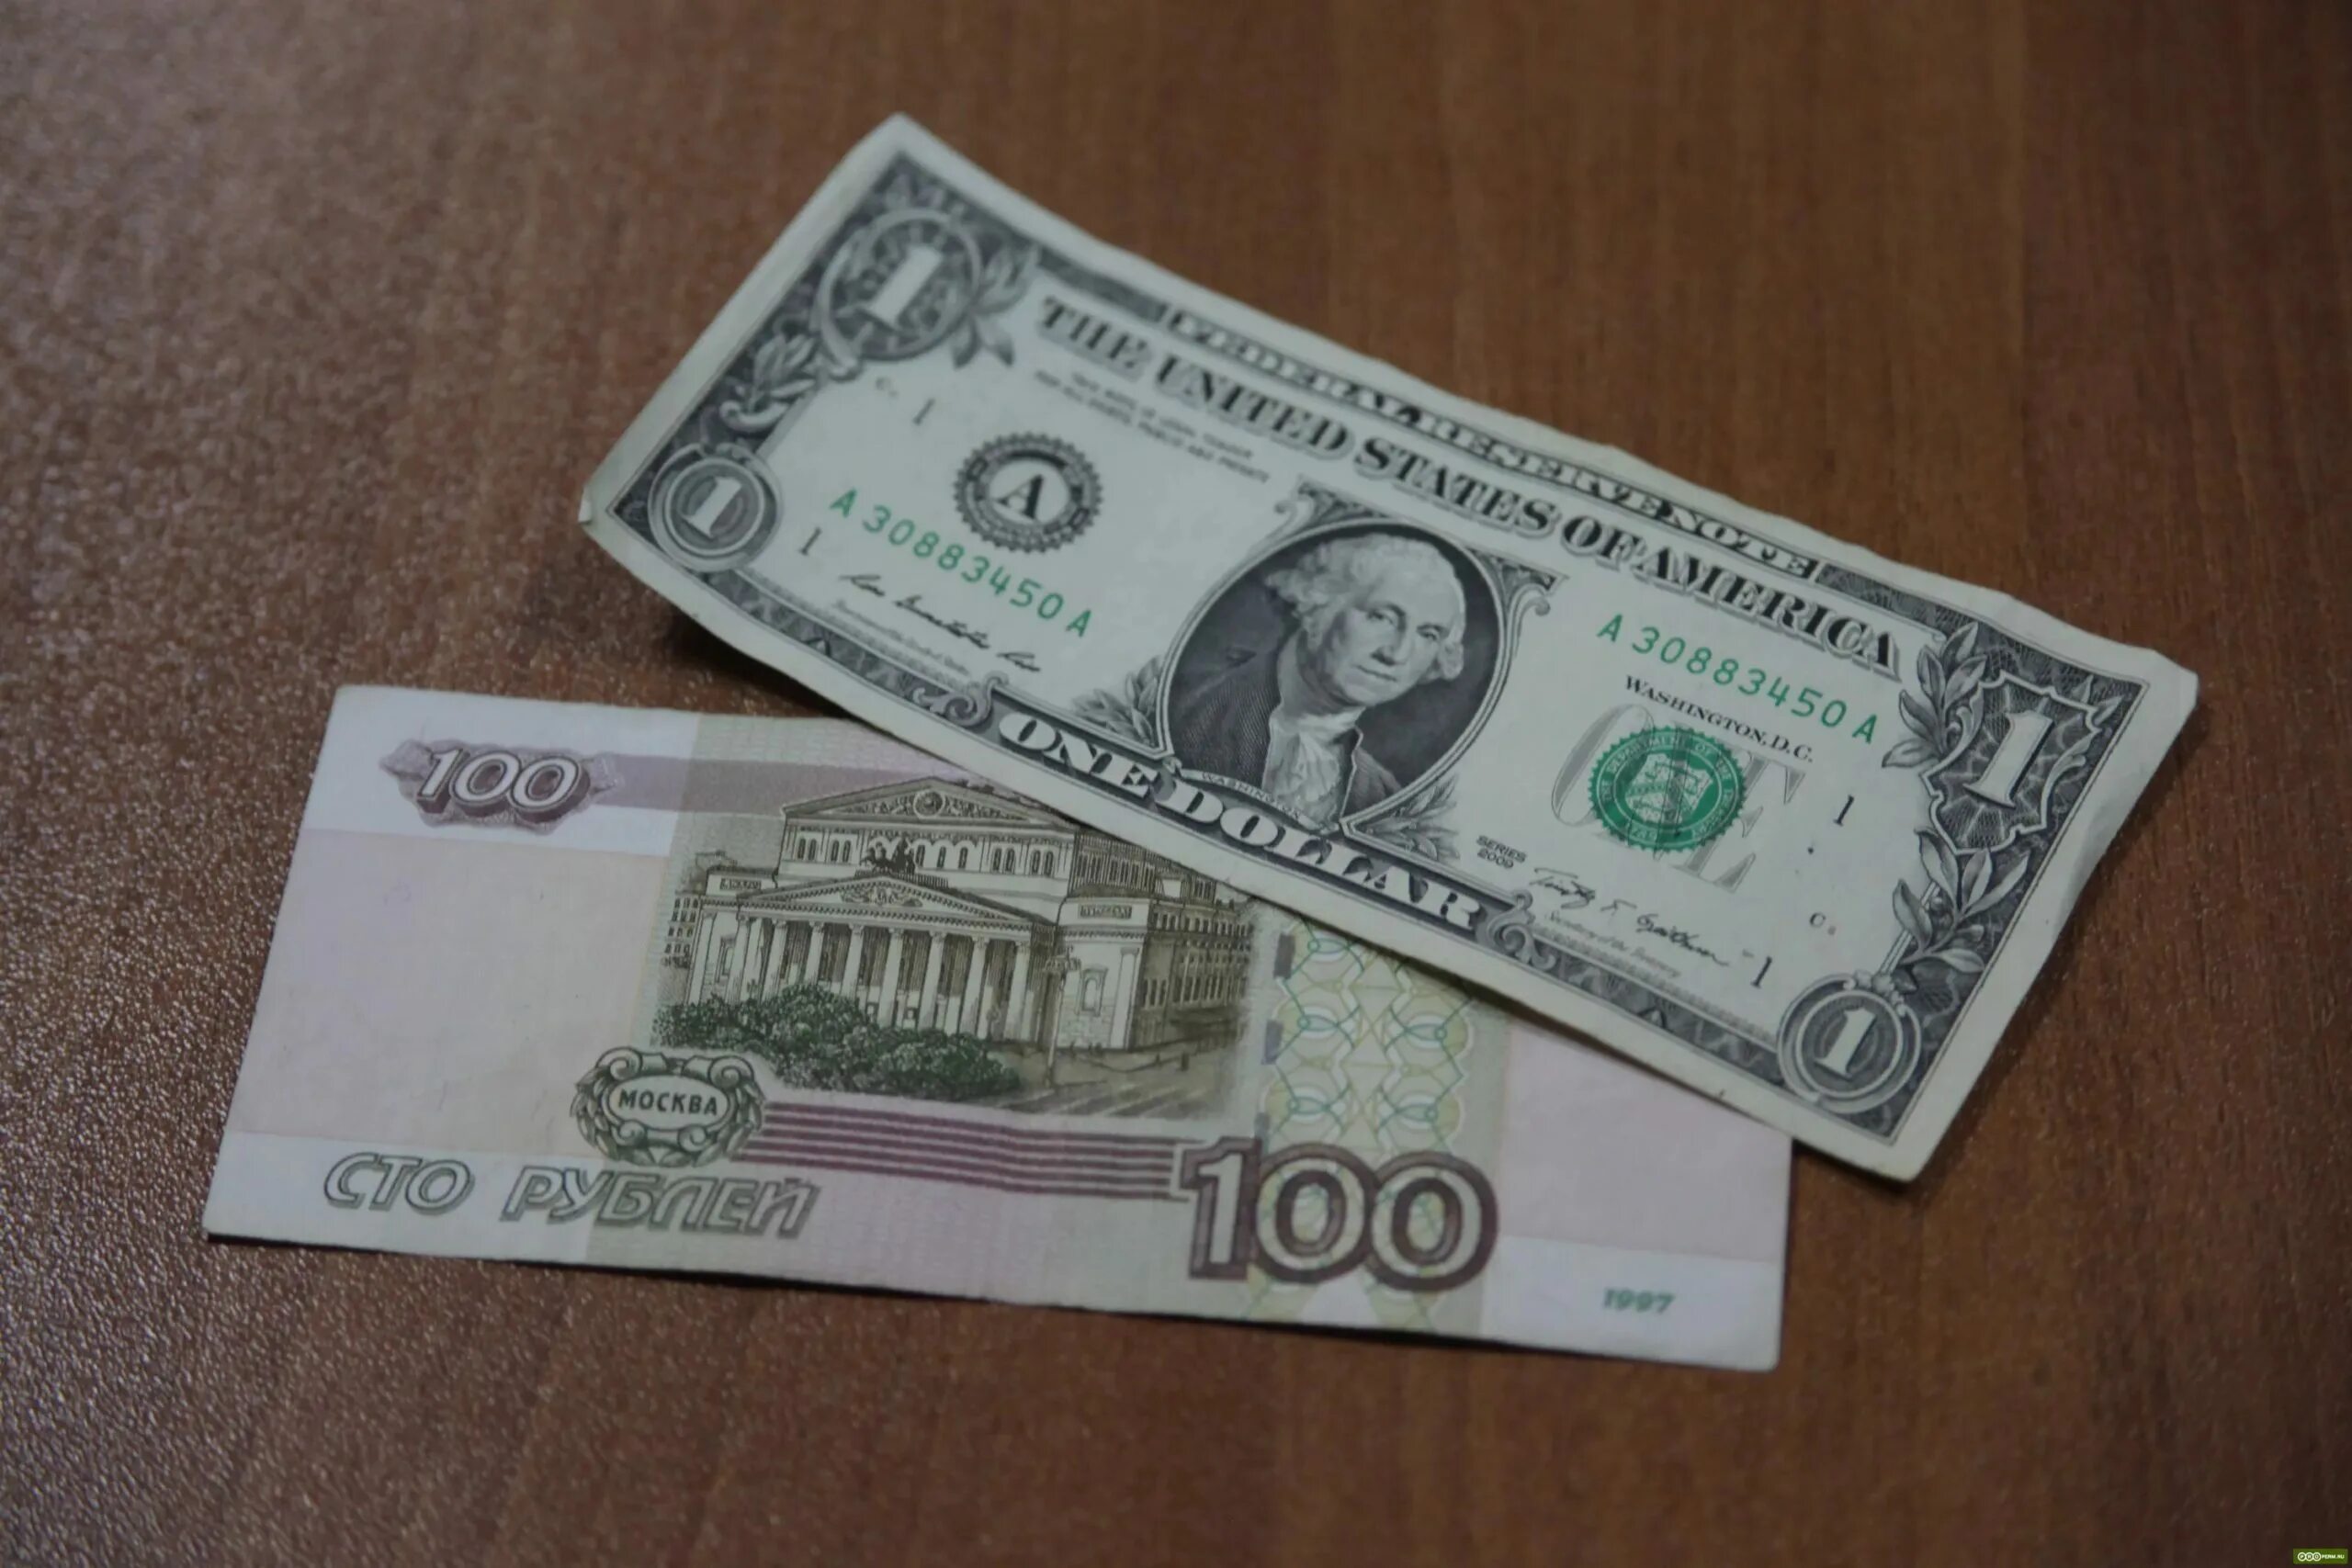 1к долларов в рублях. СТО долларов в рублях. 100 Долларов и 100 рублей. 100 Долларов в рублях. 1 Доллар 100 рублей.